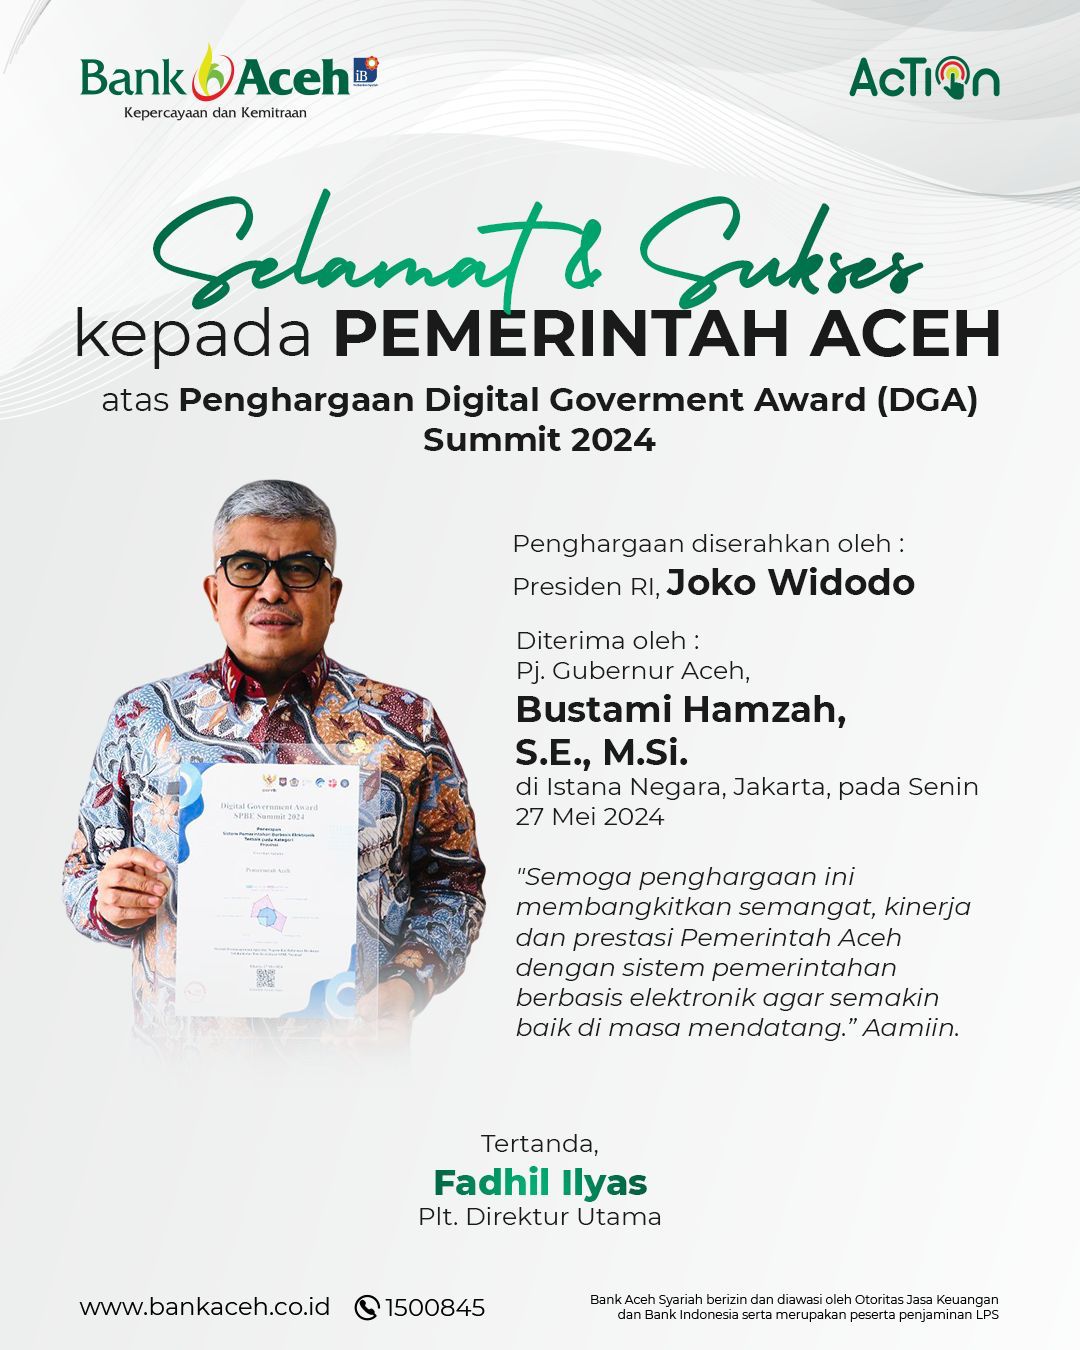 Selamat & Sukses kepada Pemerintah Aceh